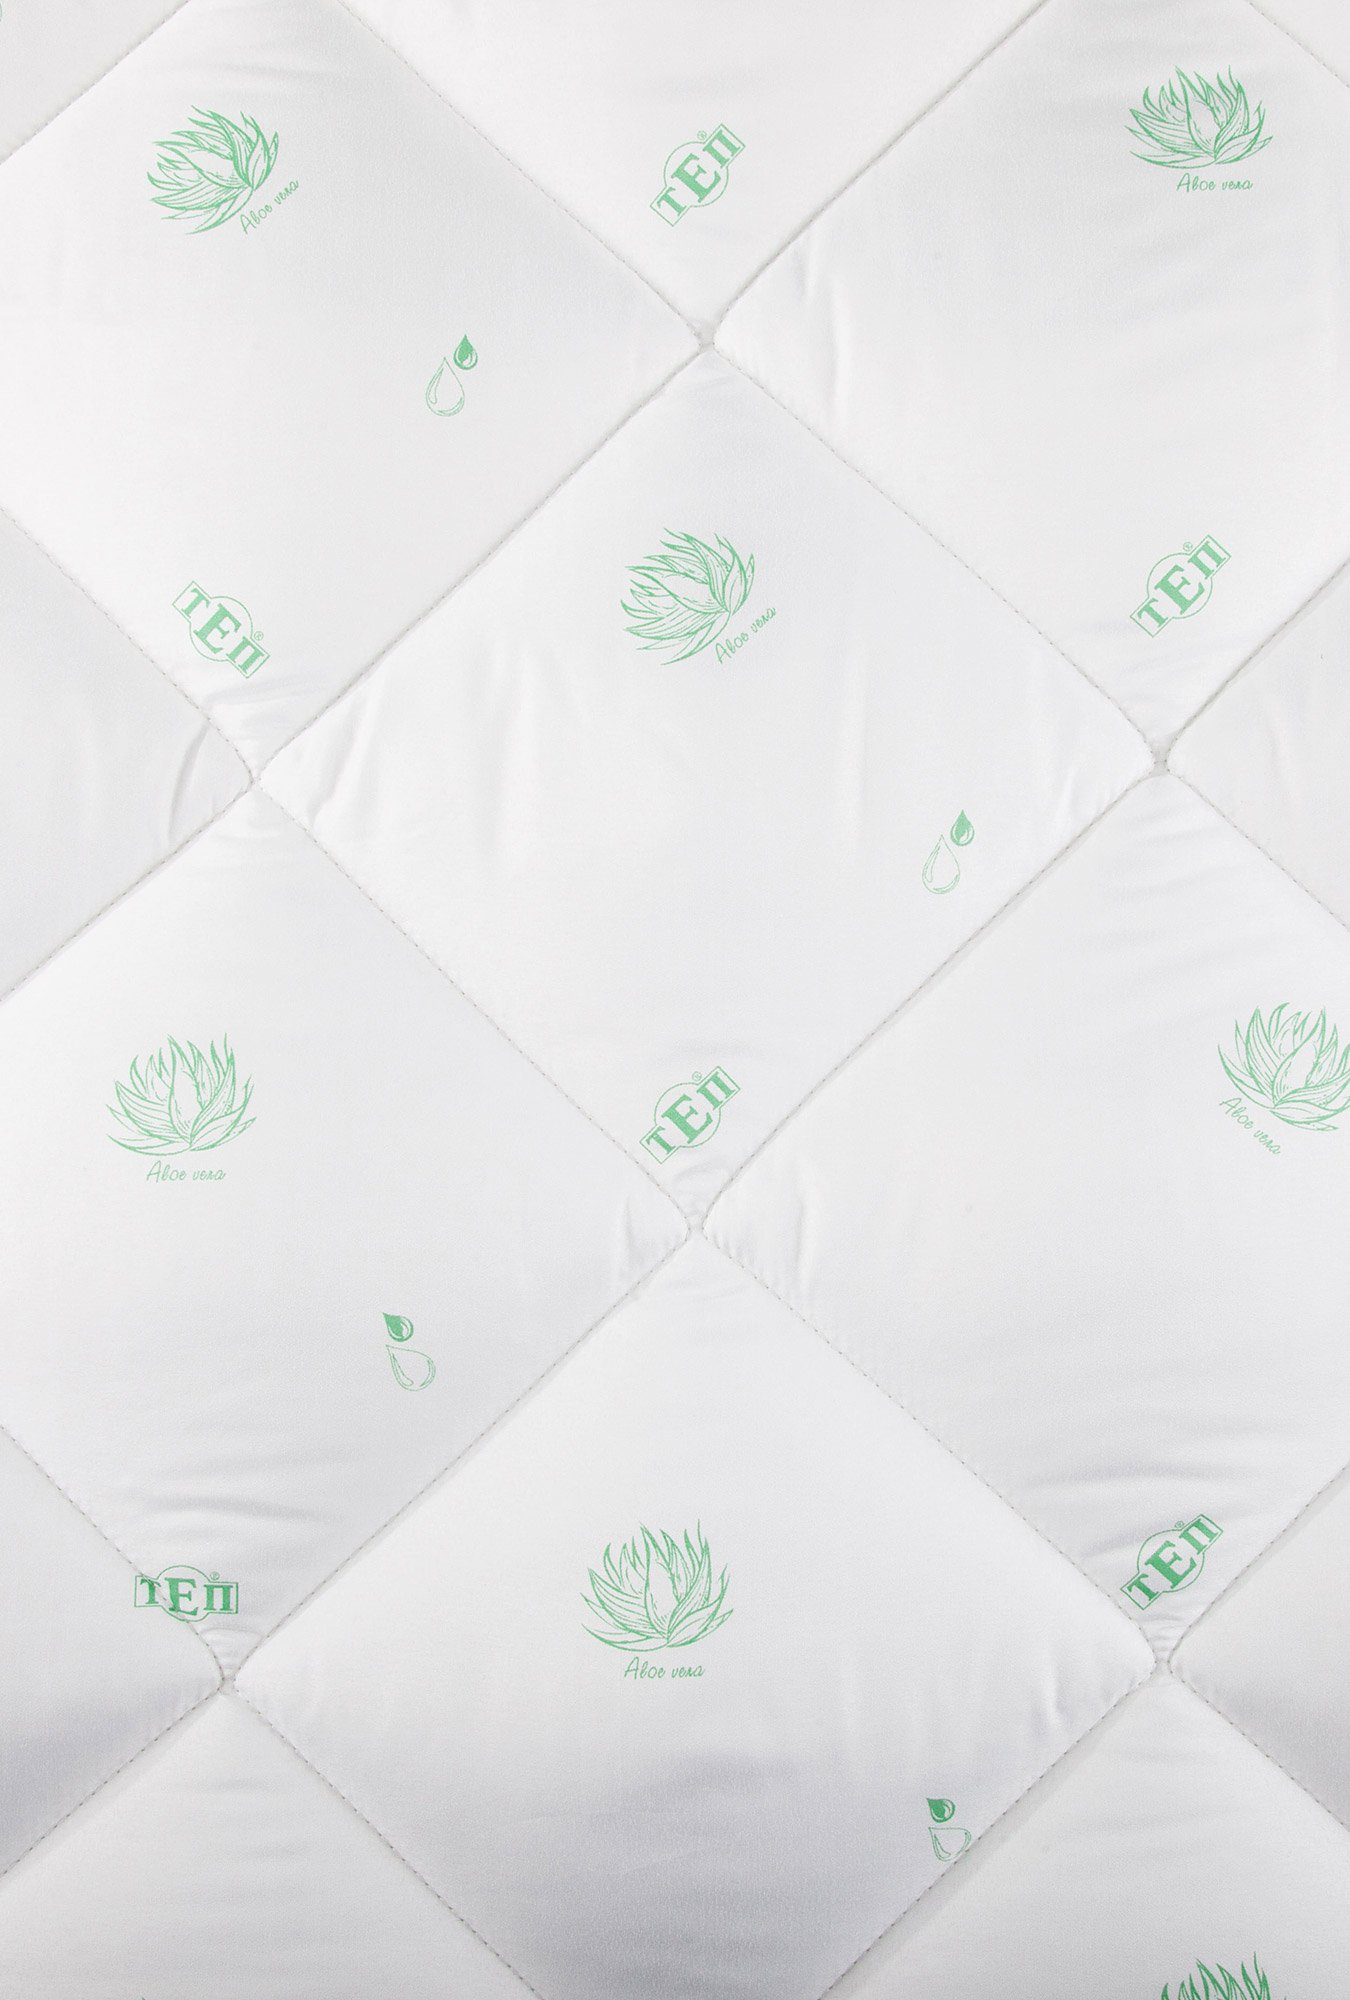 Одеяло из смеси волокон с эффектом Aloe vera 2,0 сп Balakhome